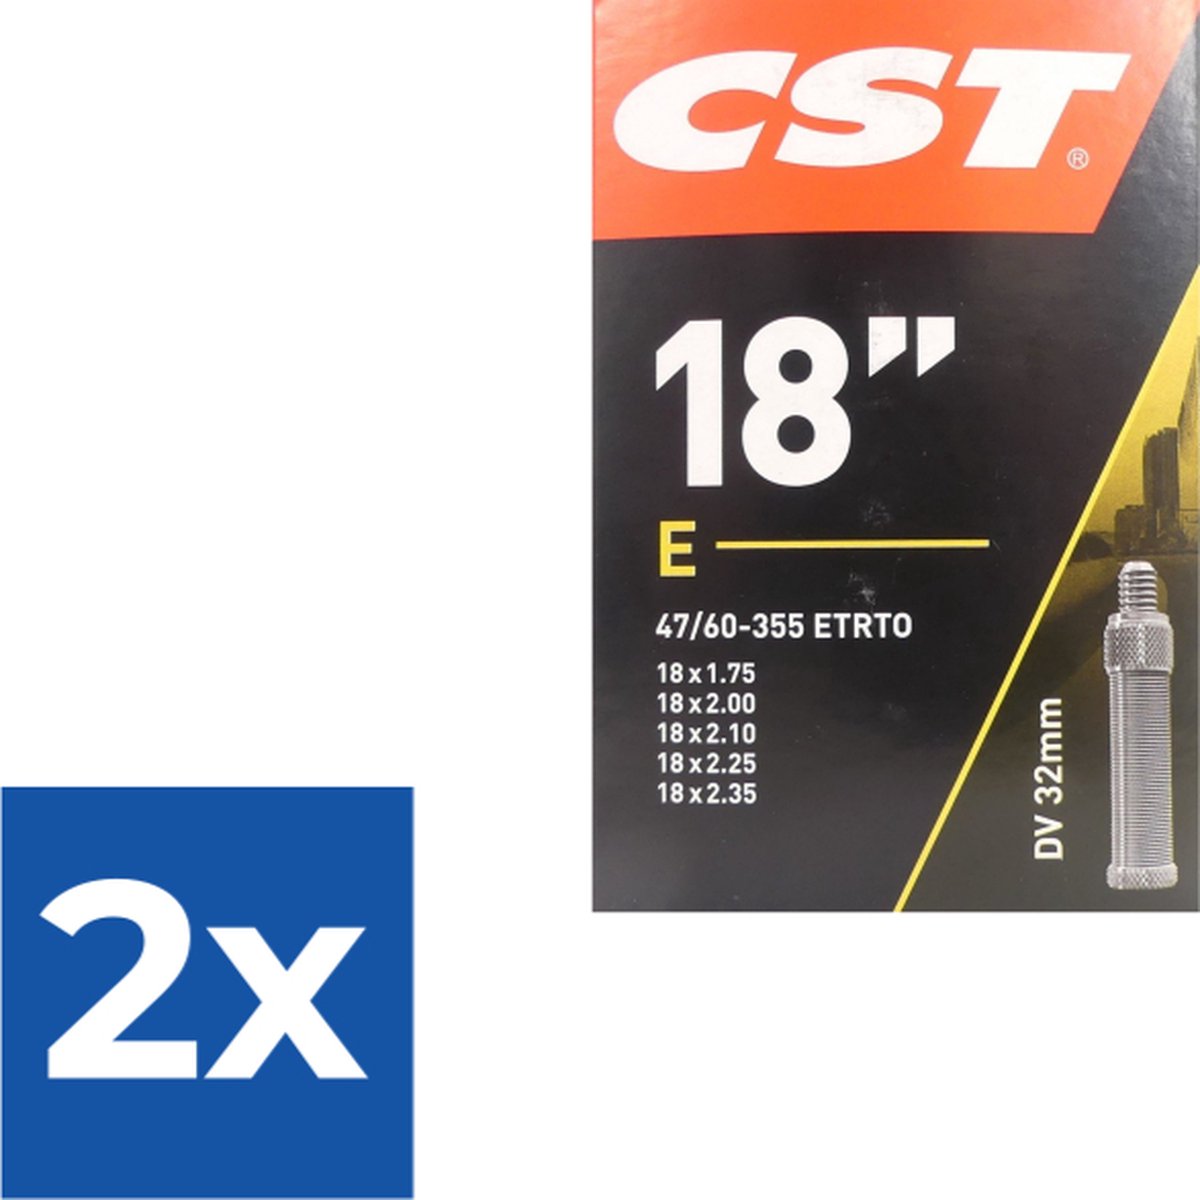 Cst Binnenband 18 X 1.75 (47/60-355) Dv 32 Mm Zwart - Voordeelverpakking 2 stuks